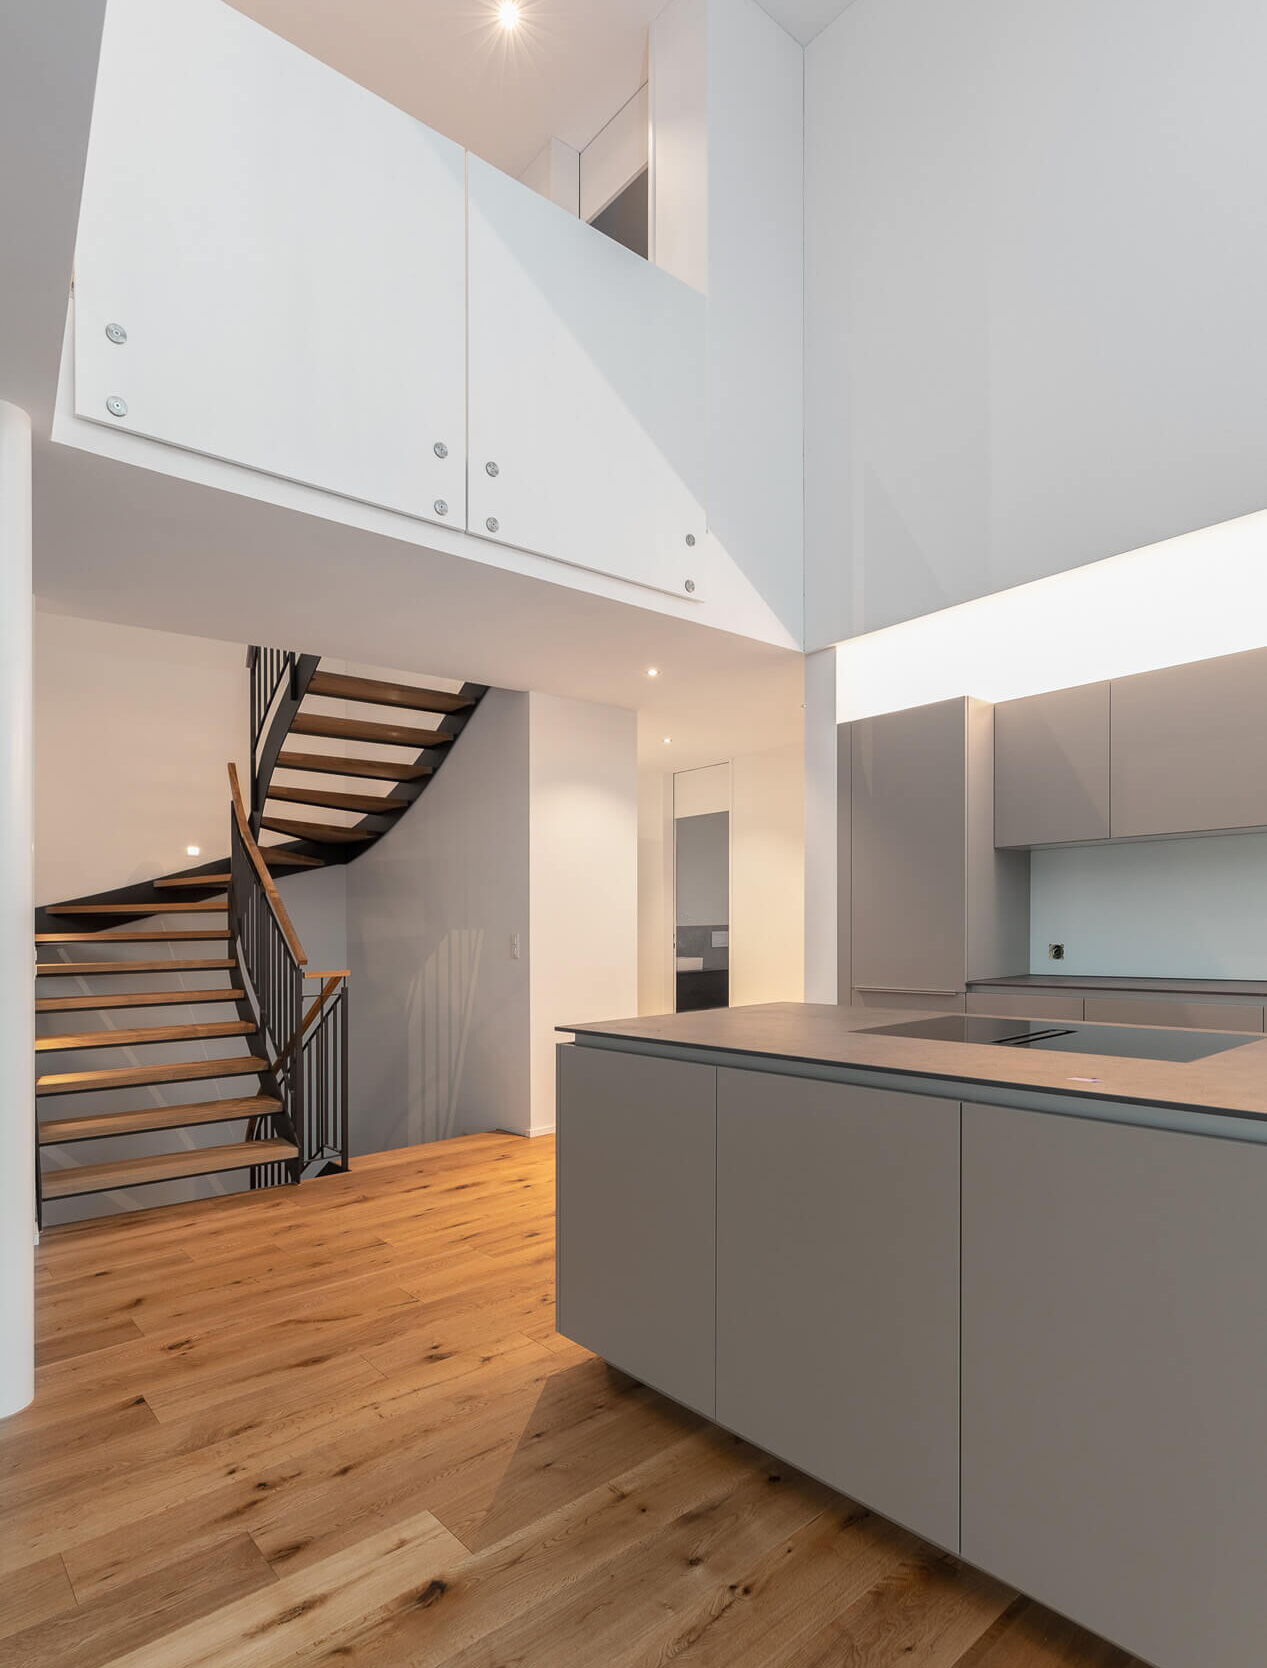 Immobilienfotografie Luzern: Wohnküche mit Treppe und Galerie